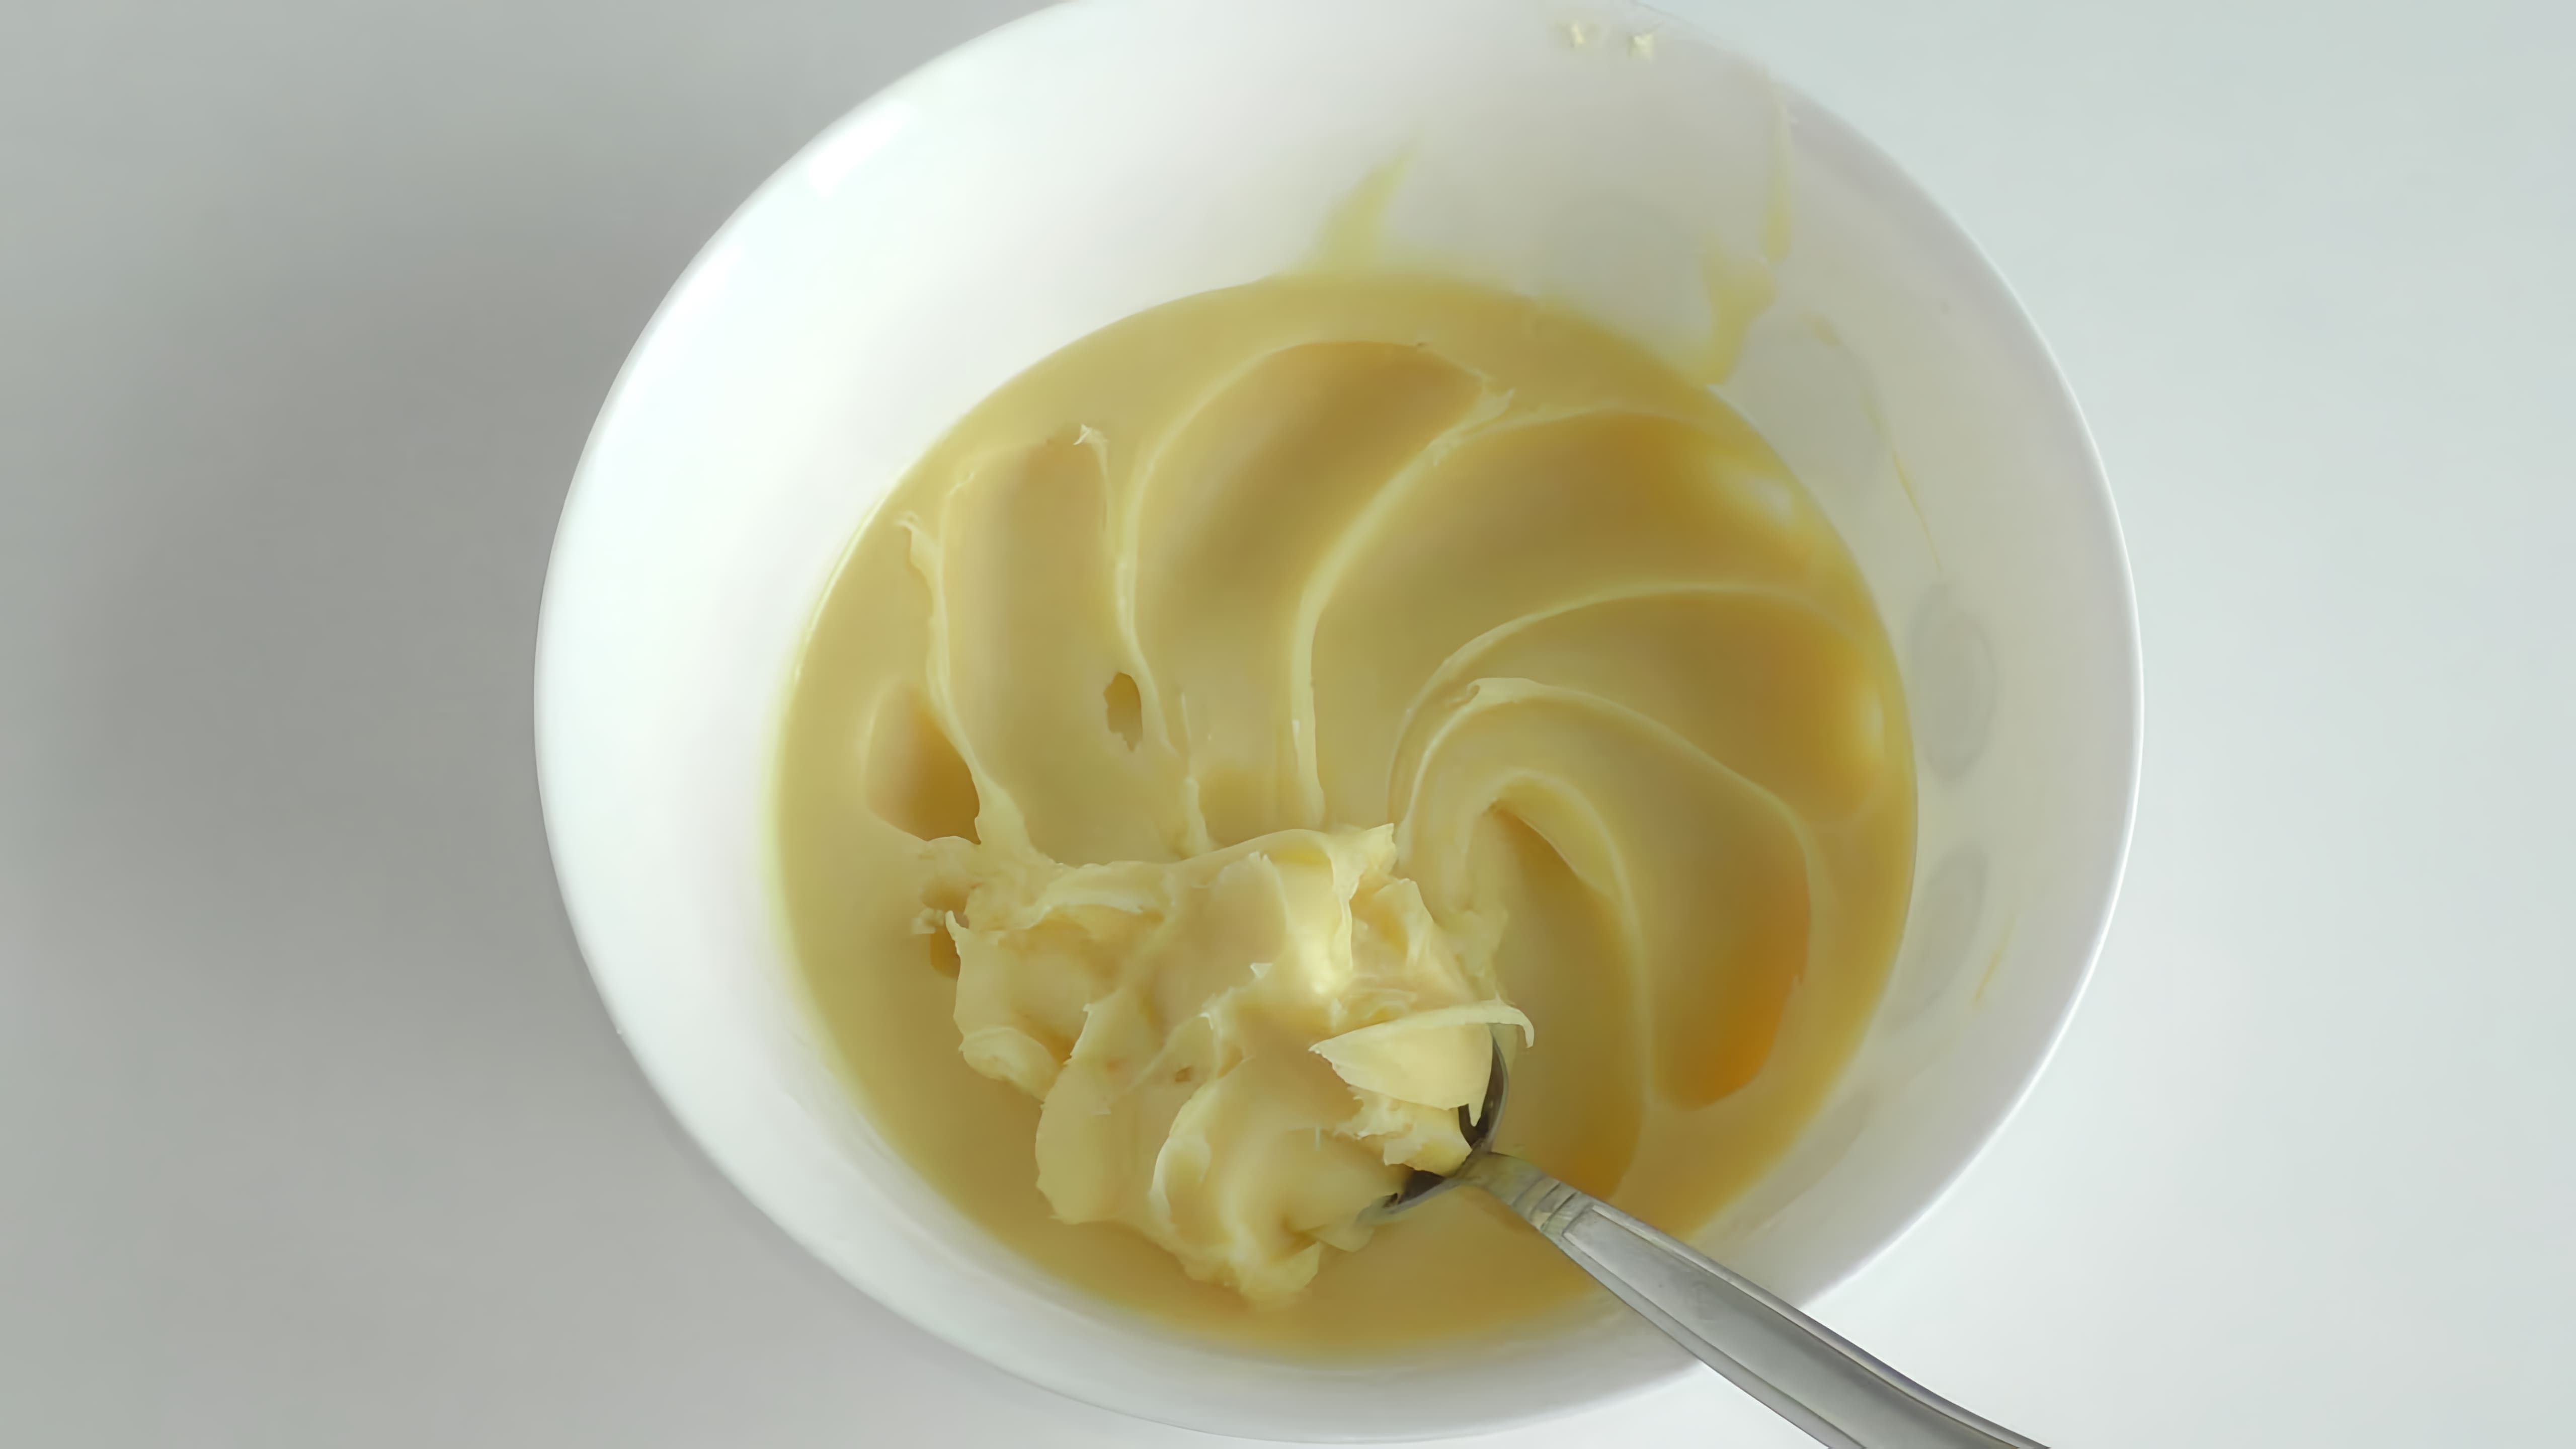 В этом видео-ролике будет показан процесс приготовления крема из конфет Рафаэлло, а также добавлен бонус - малиновый вкус Рафаэлло